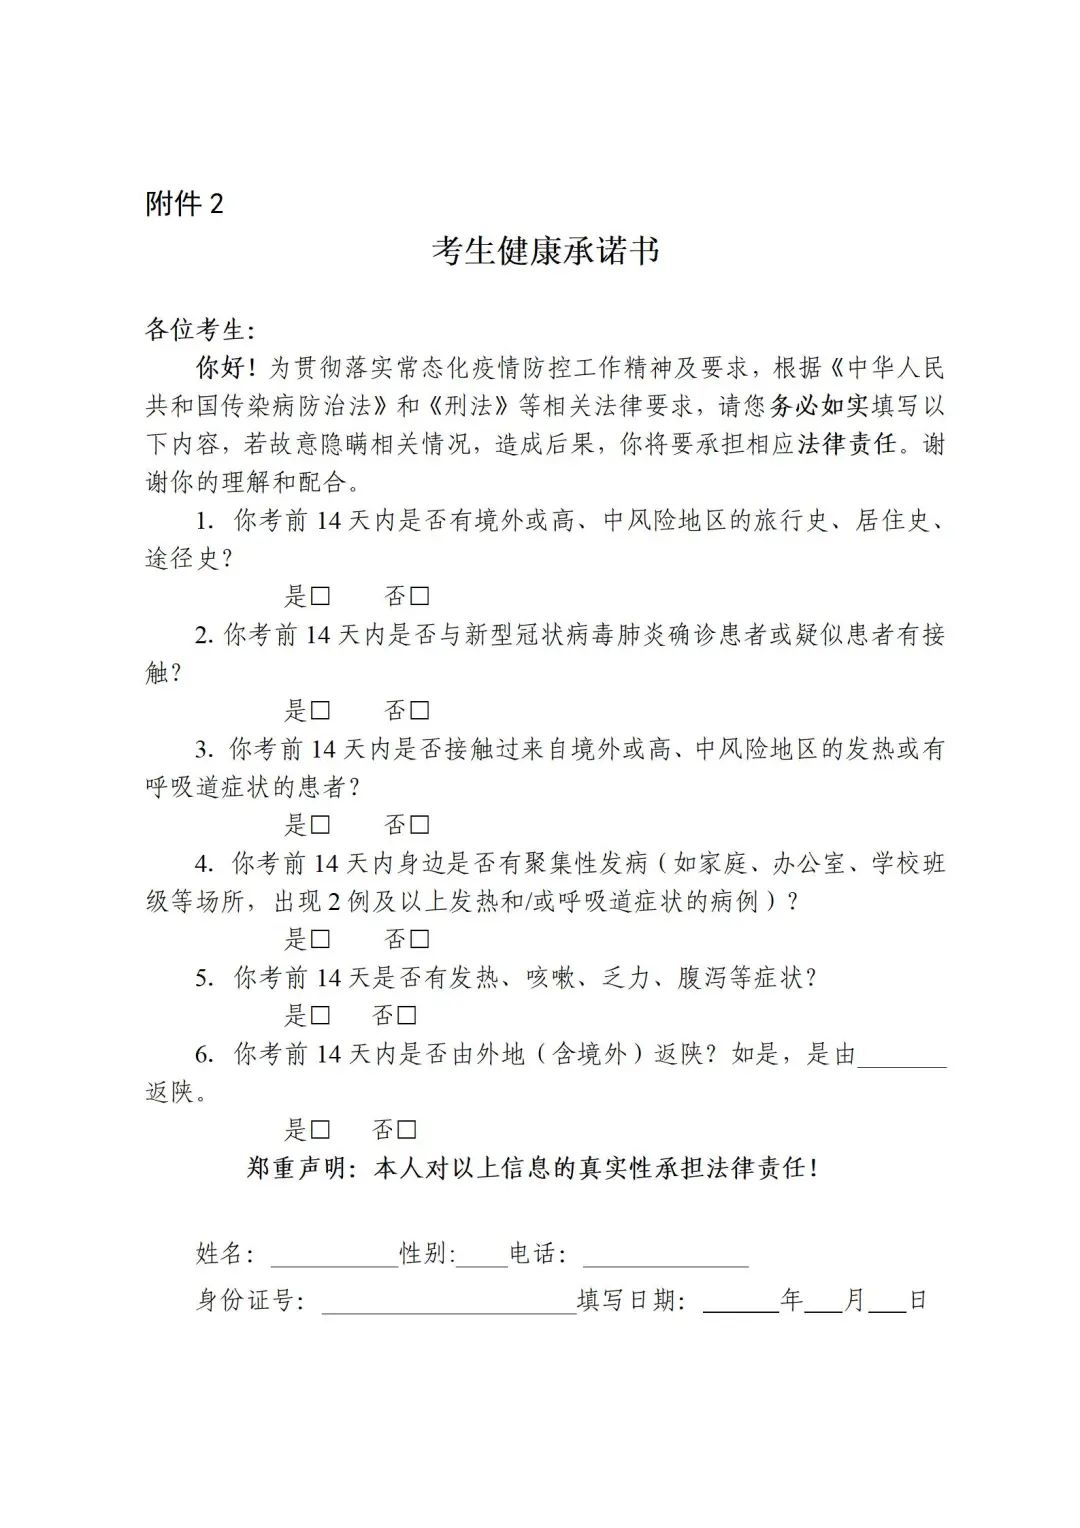 陕西：2022年普通高考滞留考生返回及防疫有关事项的公告_1